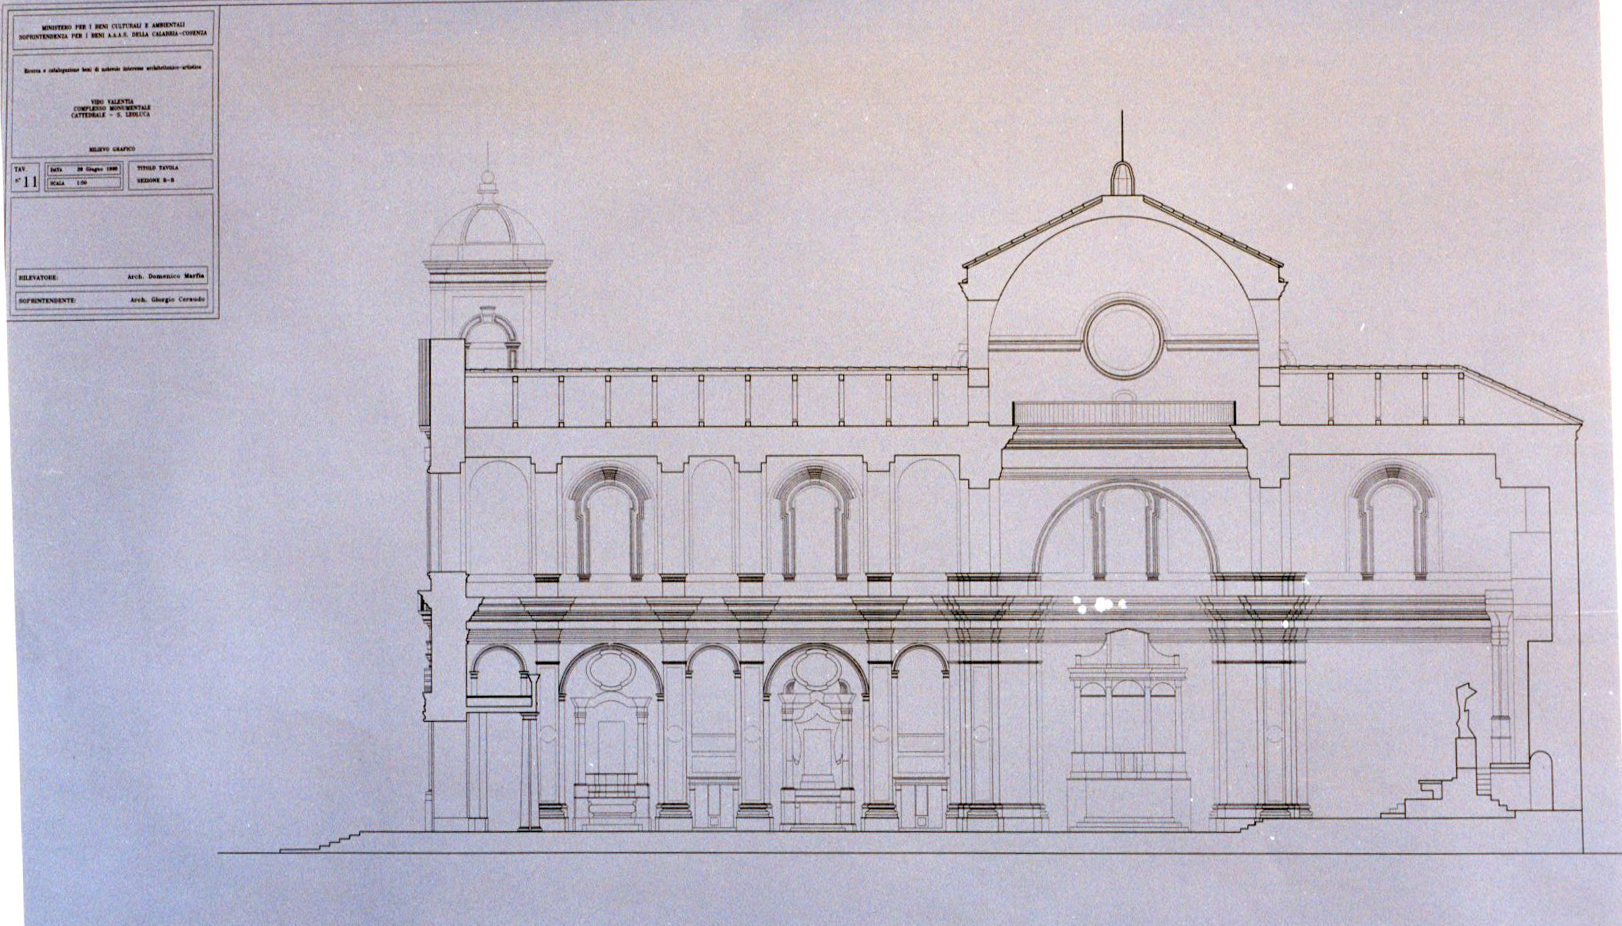 Cattedrale di San Leoluca (cattedrale) - Vibo Valentia (VV) 